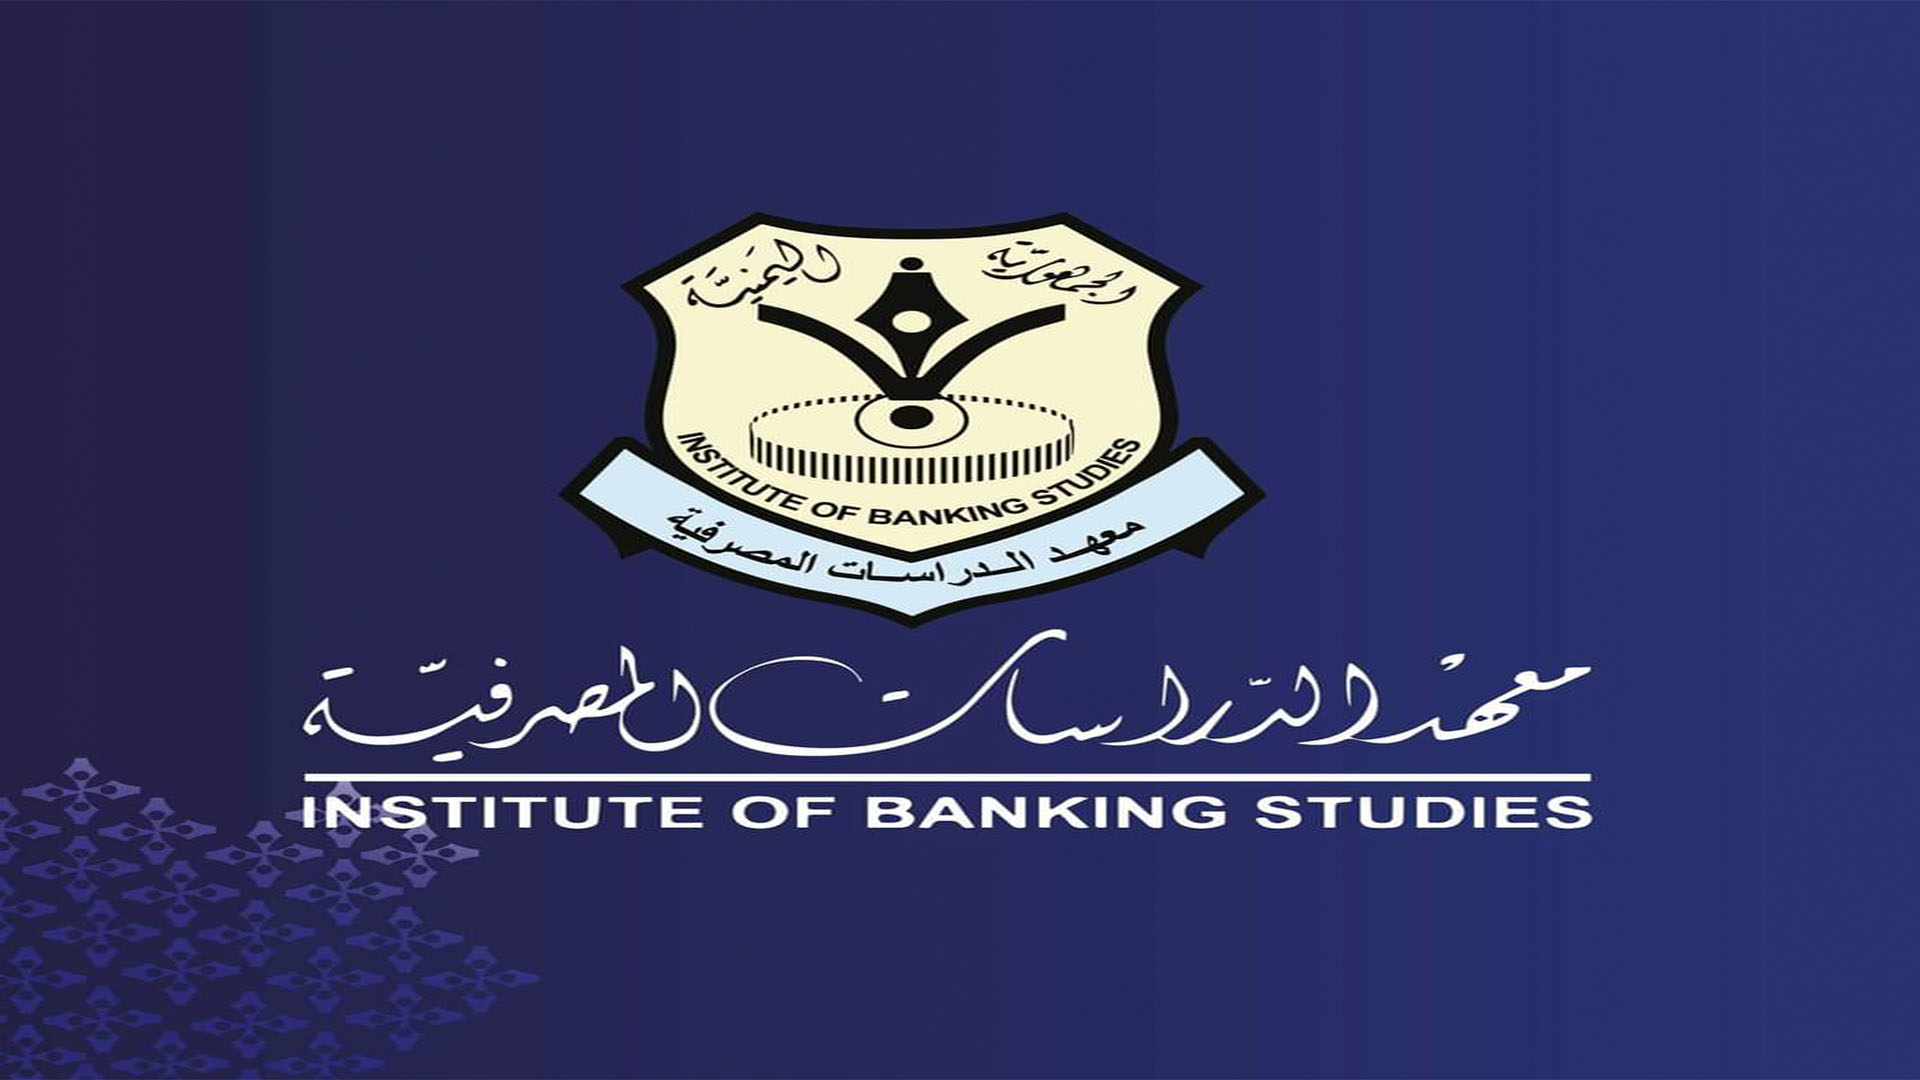 الاثنين القادم معهد الدراسات المصرفية يدشن منصة التمويل الأصغر في اليمن